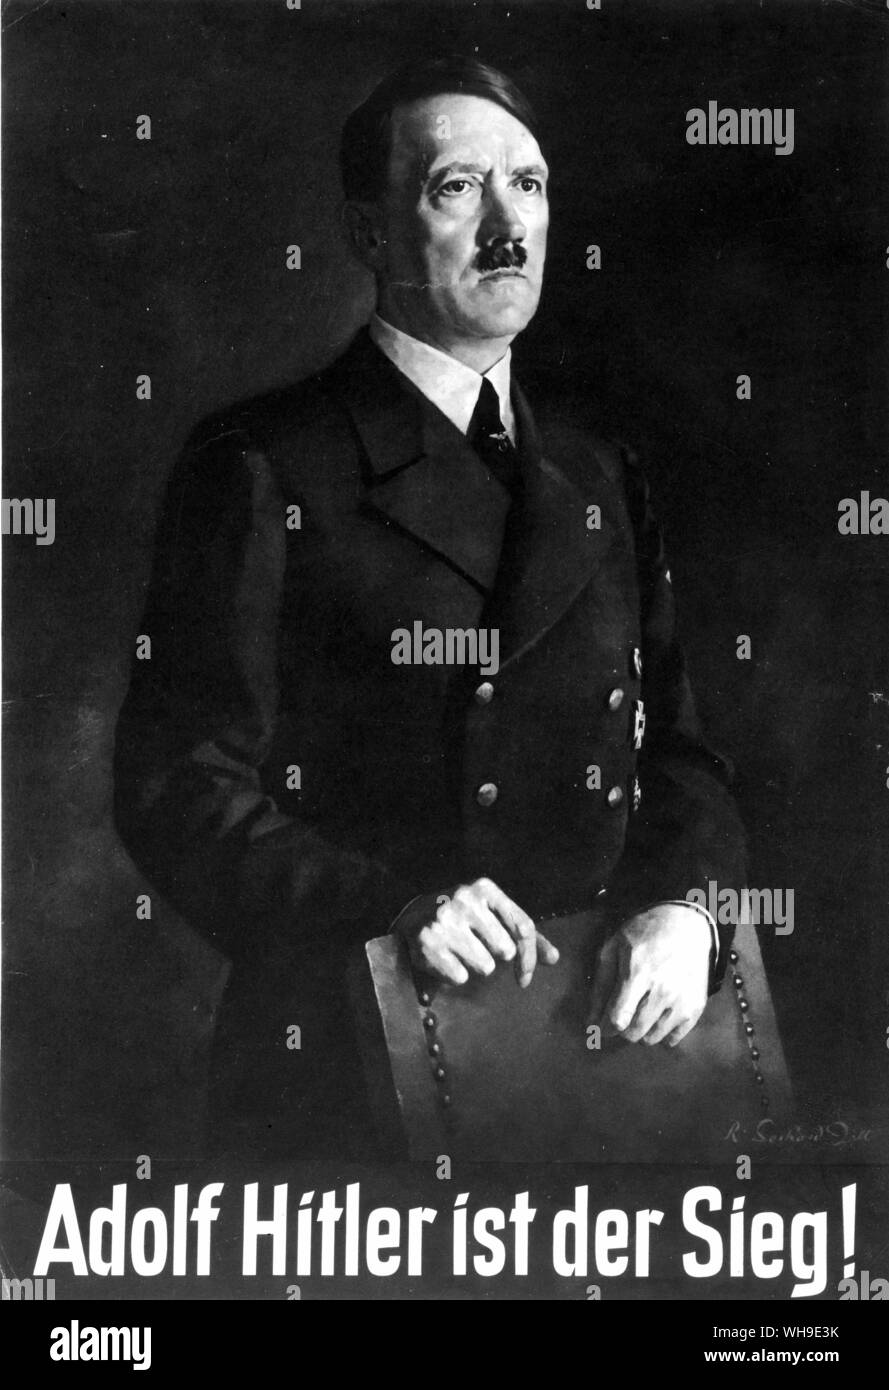 Plakat entworfen von Rudolph Gerhard Zill 1943 von Adolf Hitler (1889-1945), NS-Führer und Deutschen Diktator. Plakat liest: "Adolf Hitler ist der Sieg!" Stockfoto